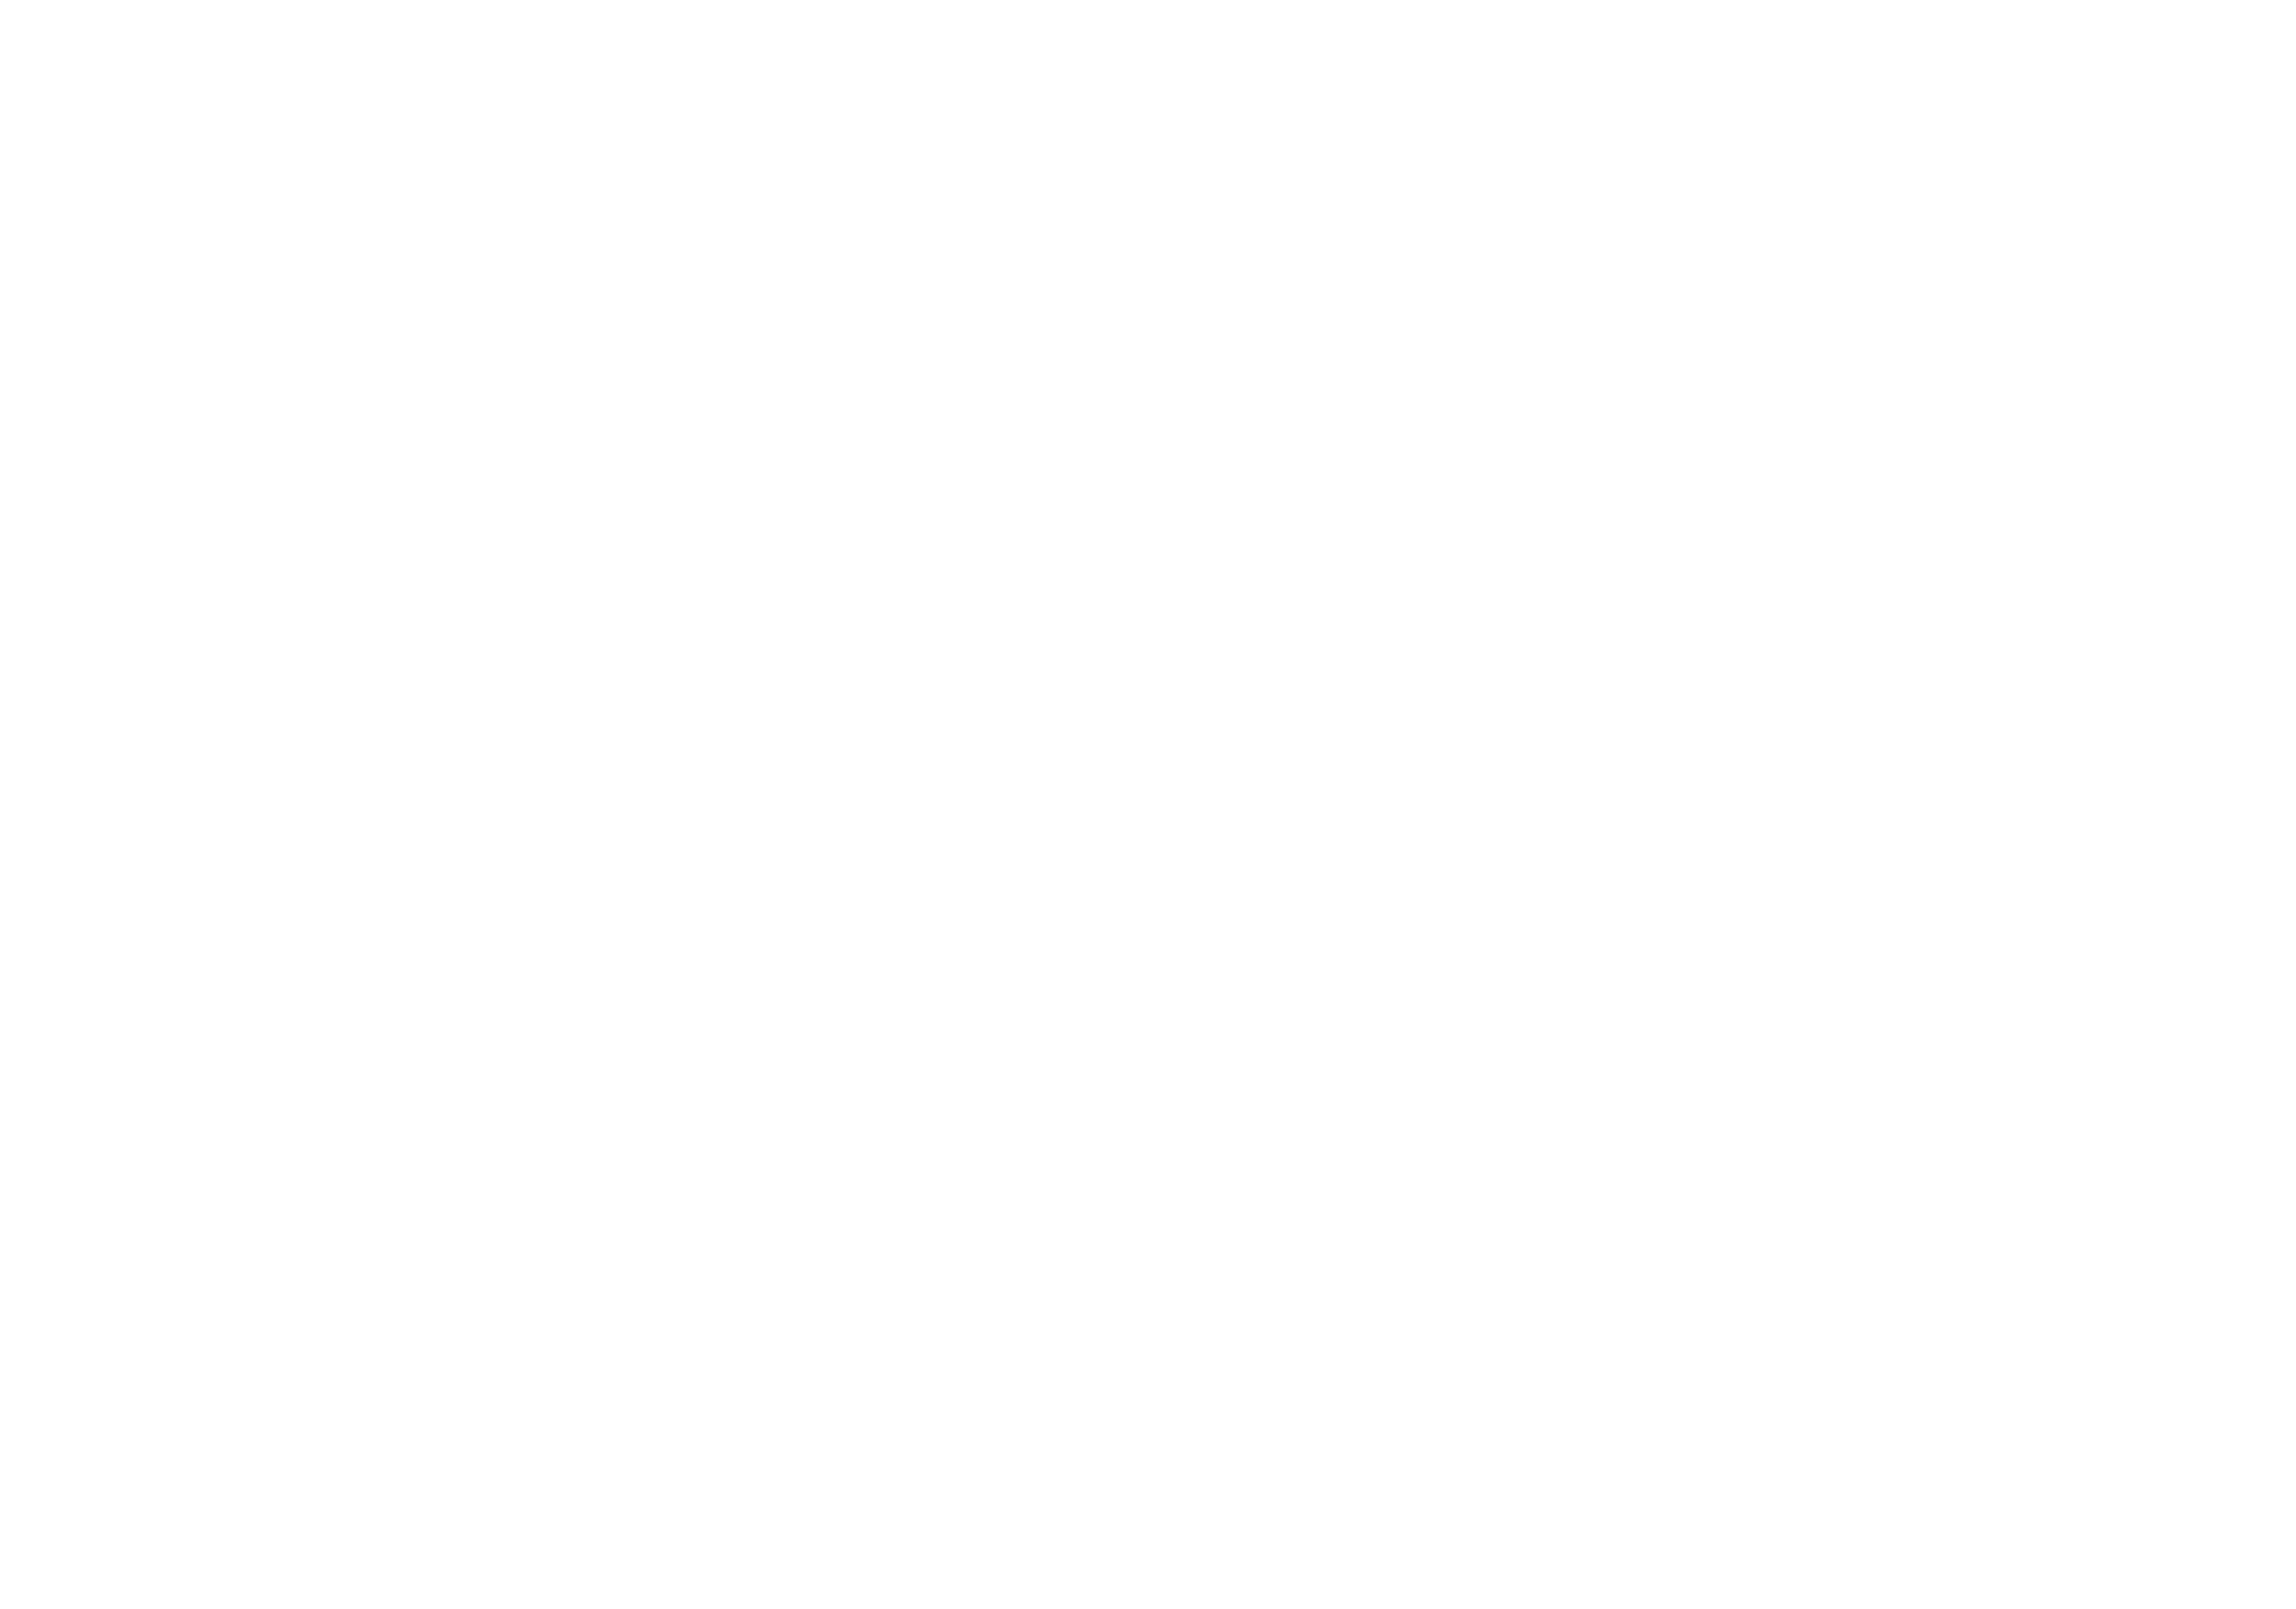 castletrust